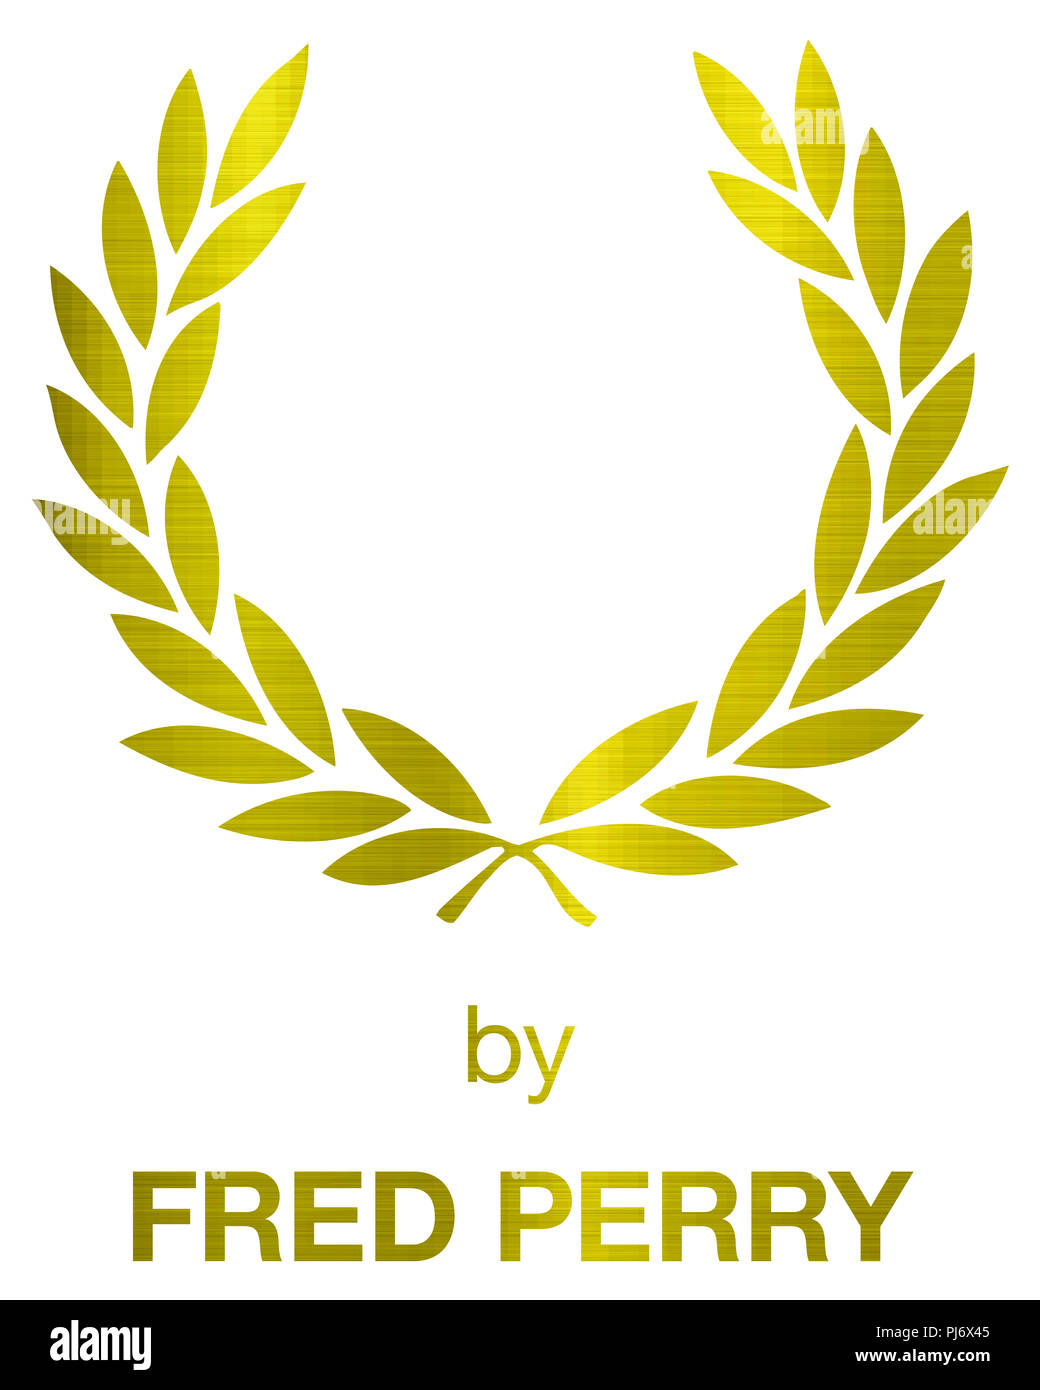 Fred Perry logotipo de marca de lujo de moda ropa ilustración